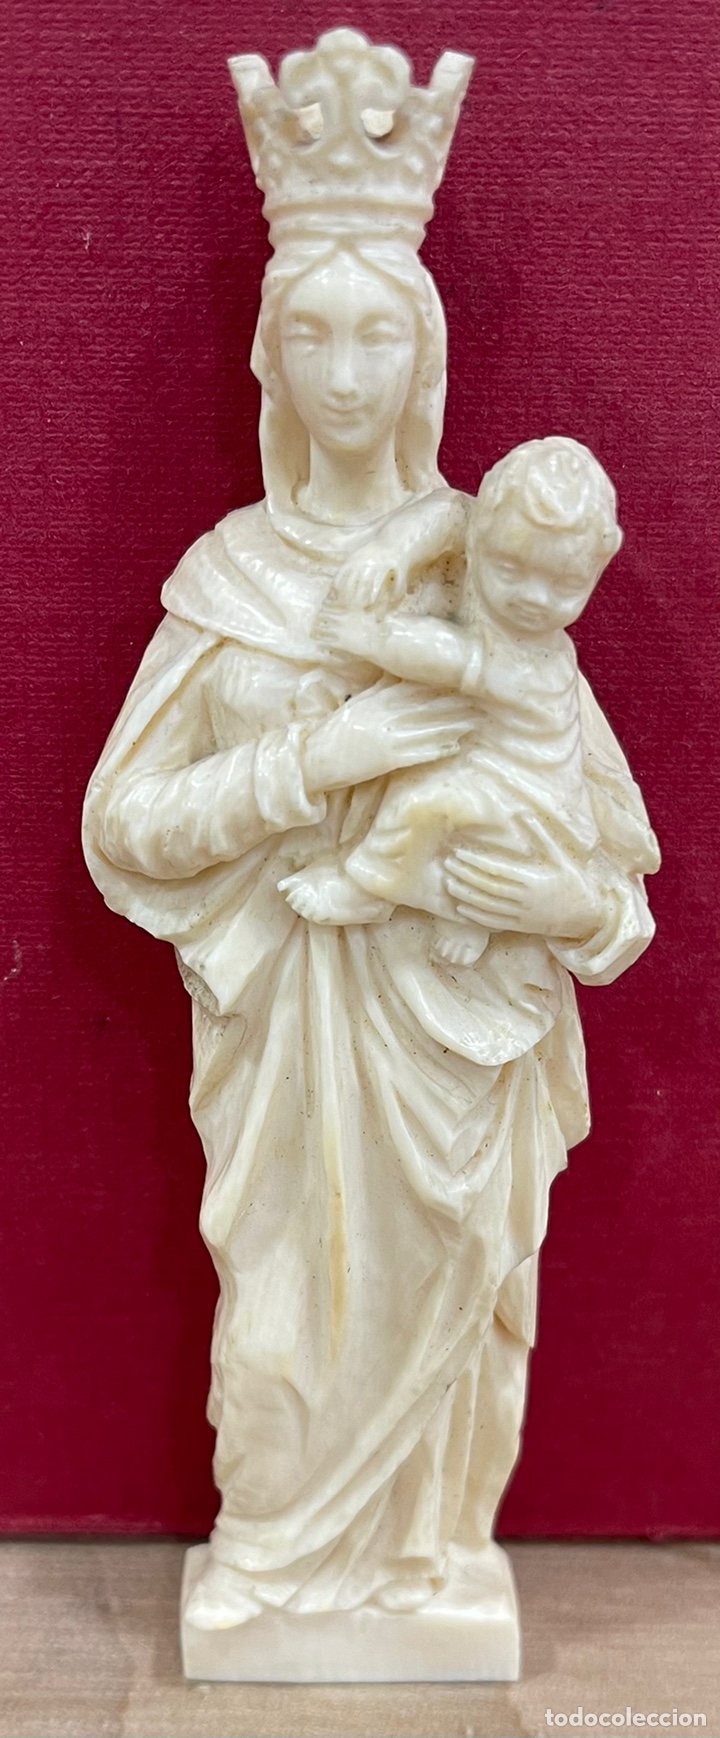 ANTIGUA TALLA DE HUESO, DE LA VIRGEN MARIA, Y EL NIÑO JESÚS. (Arte - Arte Religioso - Escultura)